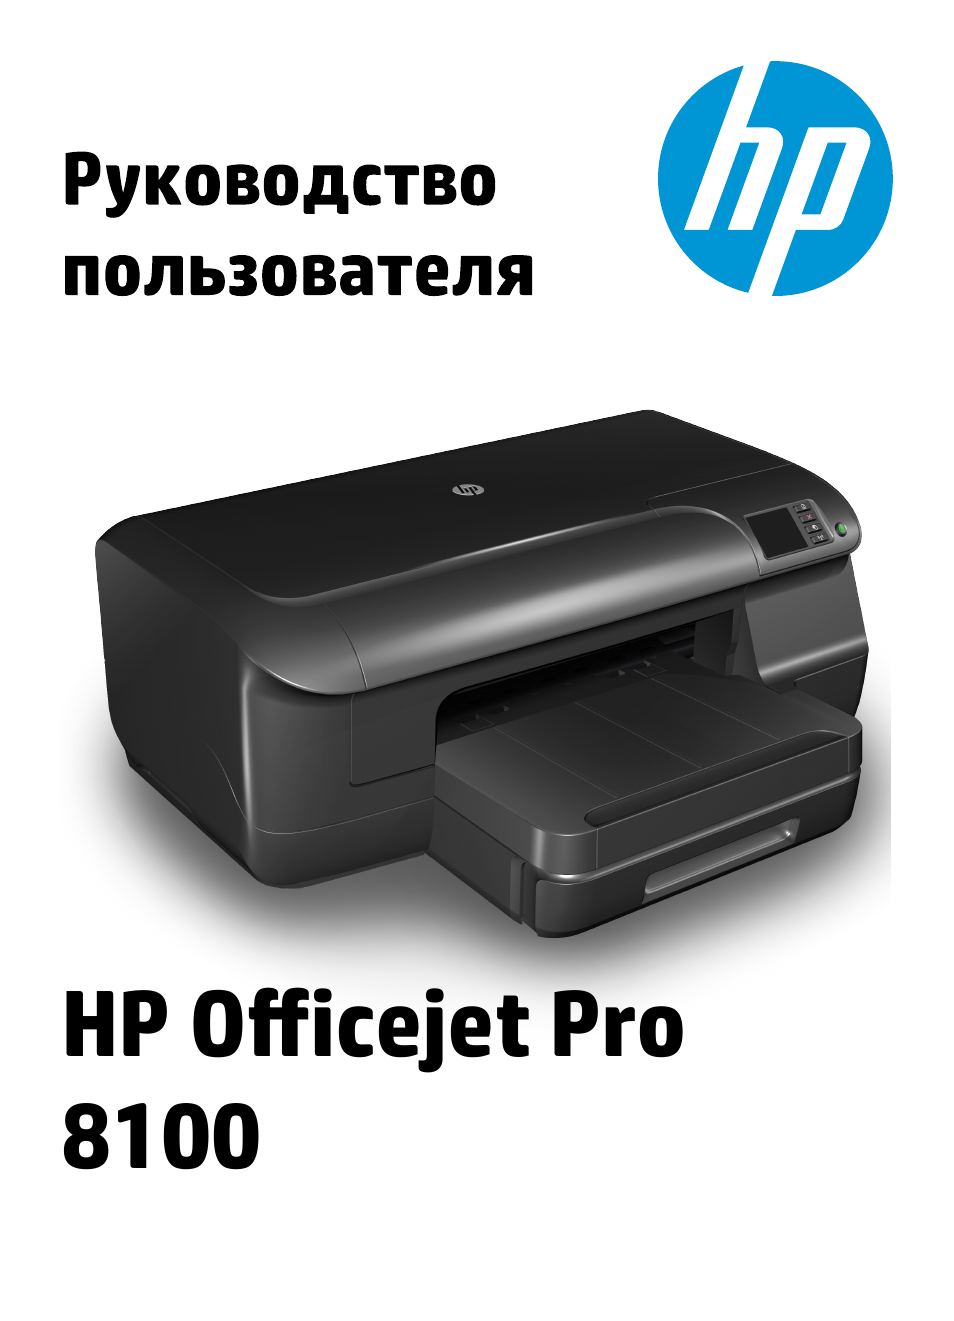 Инструкция по эксплуатации HP Принтер HP Officejet Pro 8100 ePrinter - N811a N811d | 170 страниц